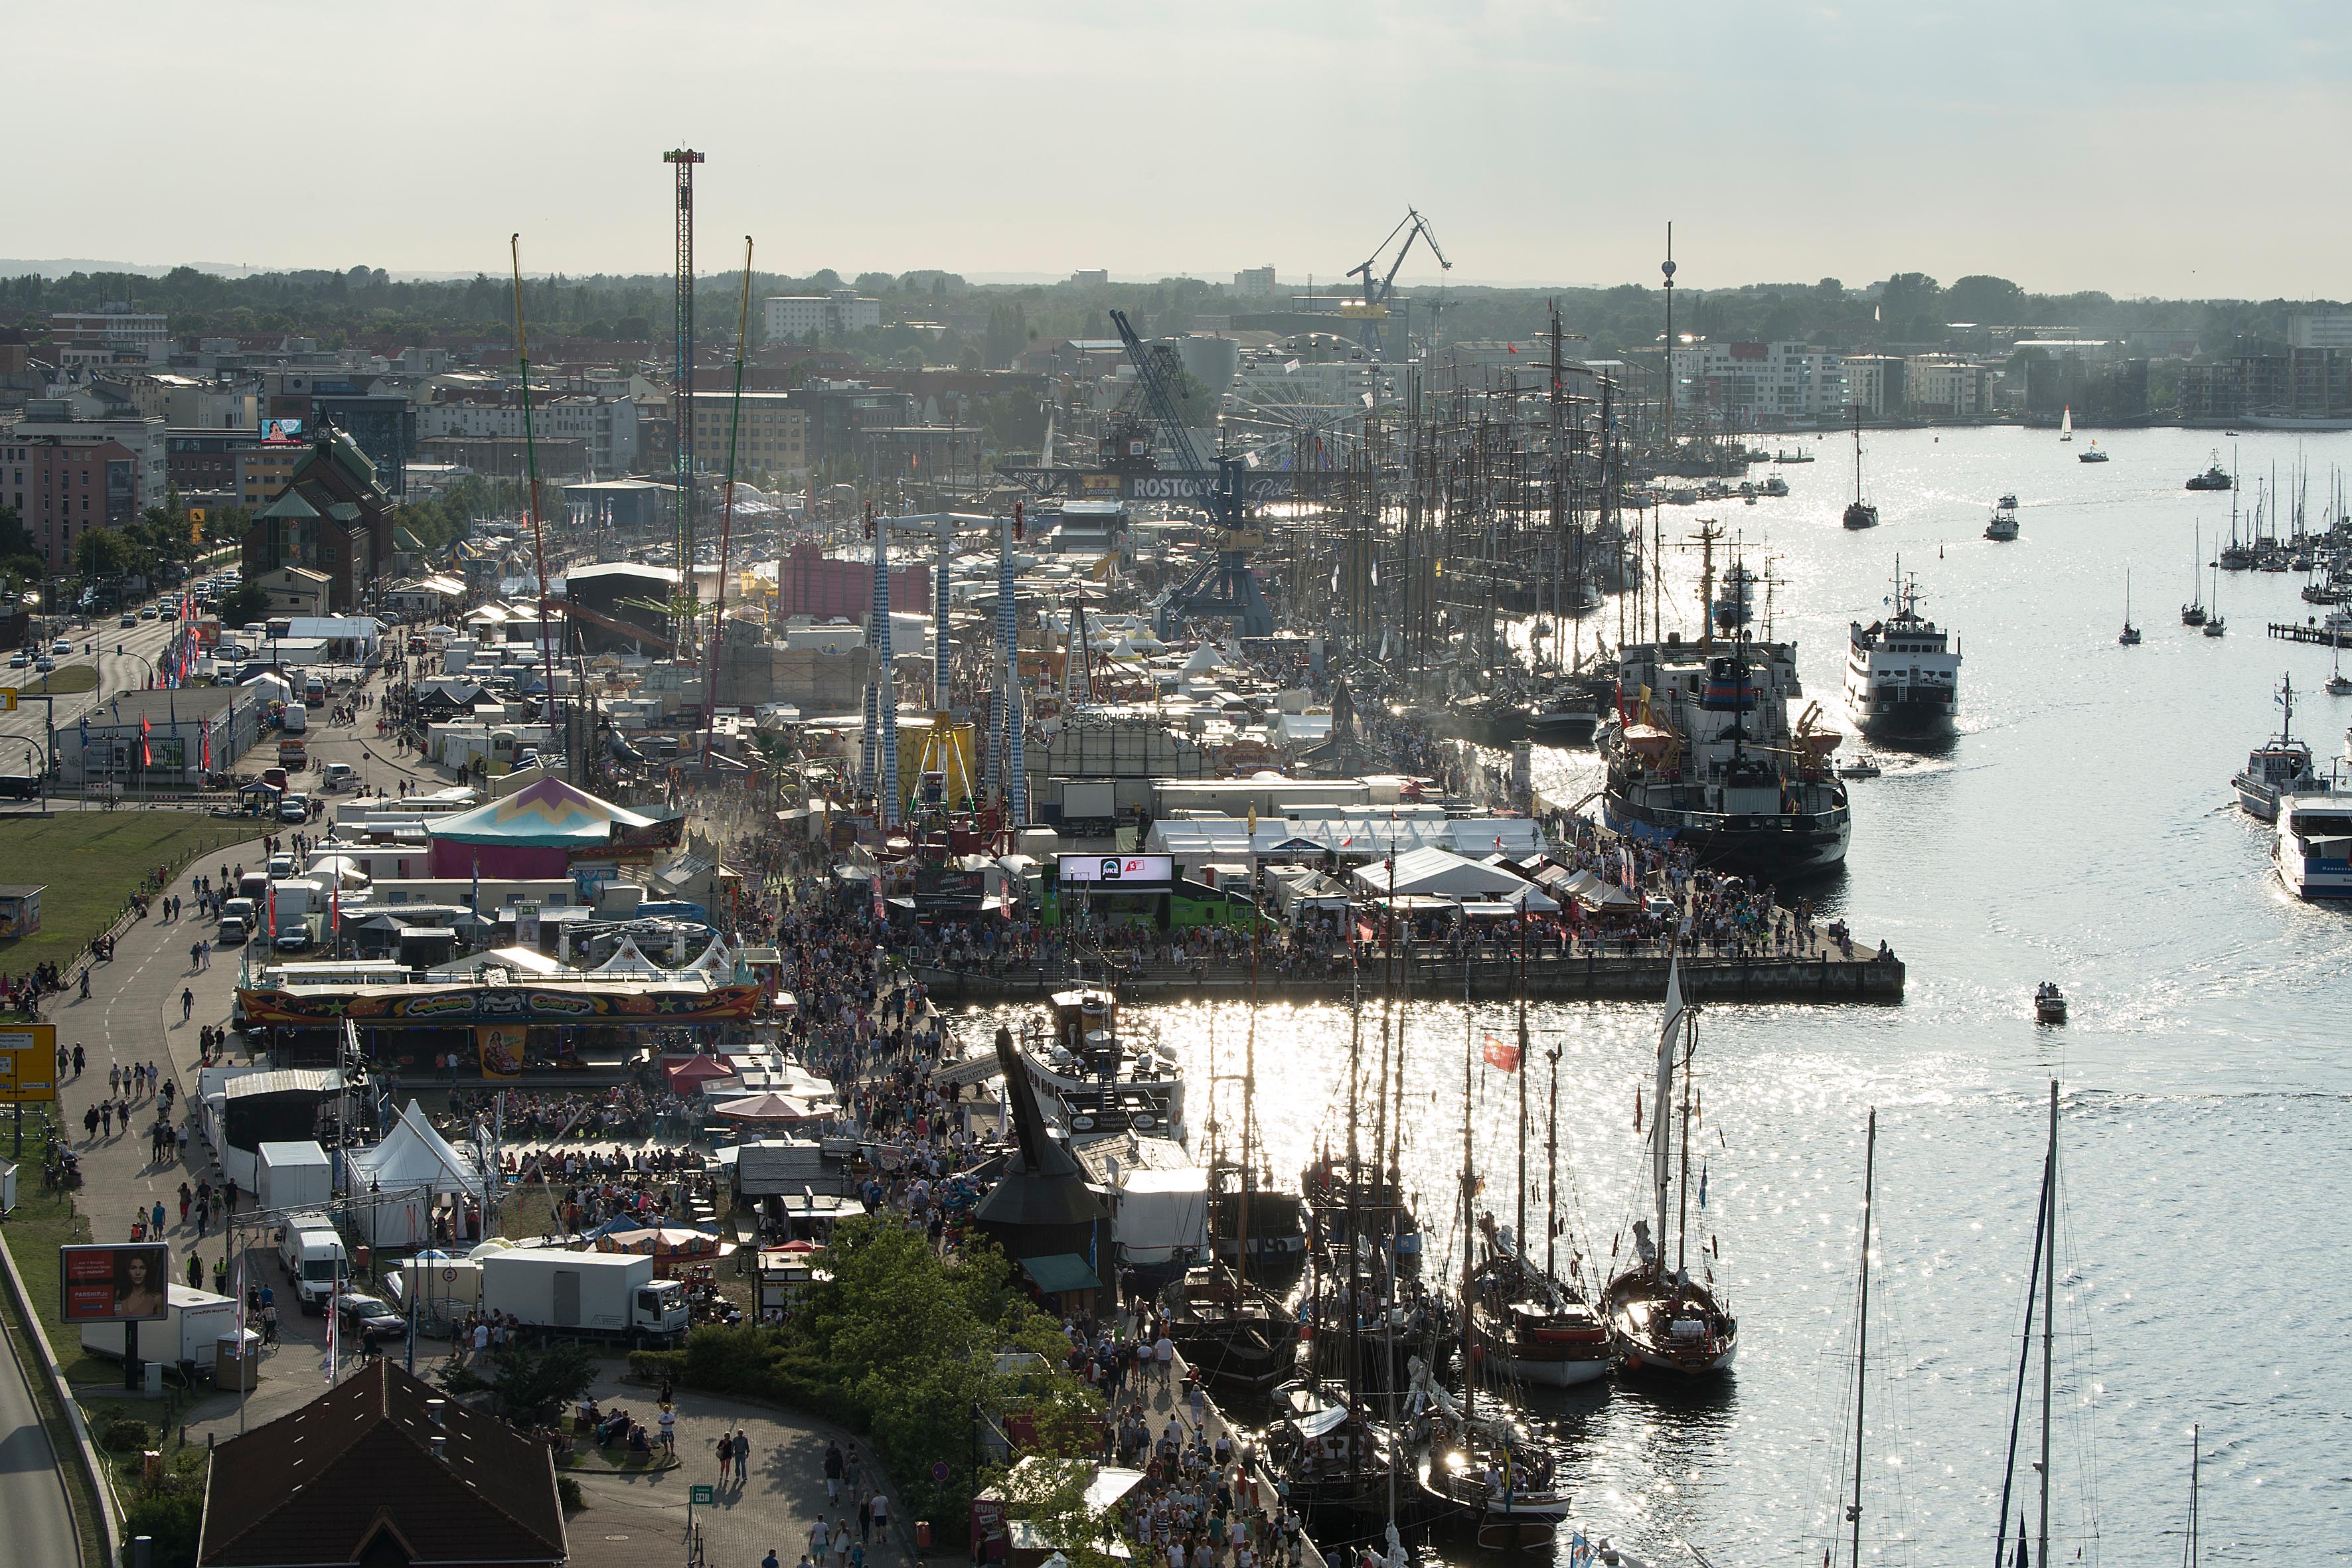 Maritim und unterhaltsam präsentiert sich die Bummelmeile im Rostocker Stadthafen, Foto: Lutz Zimmermann